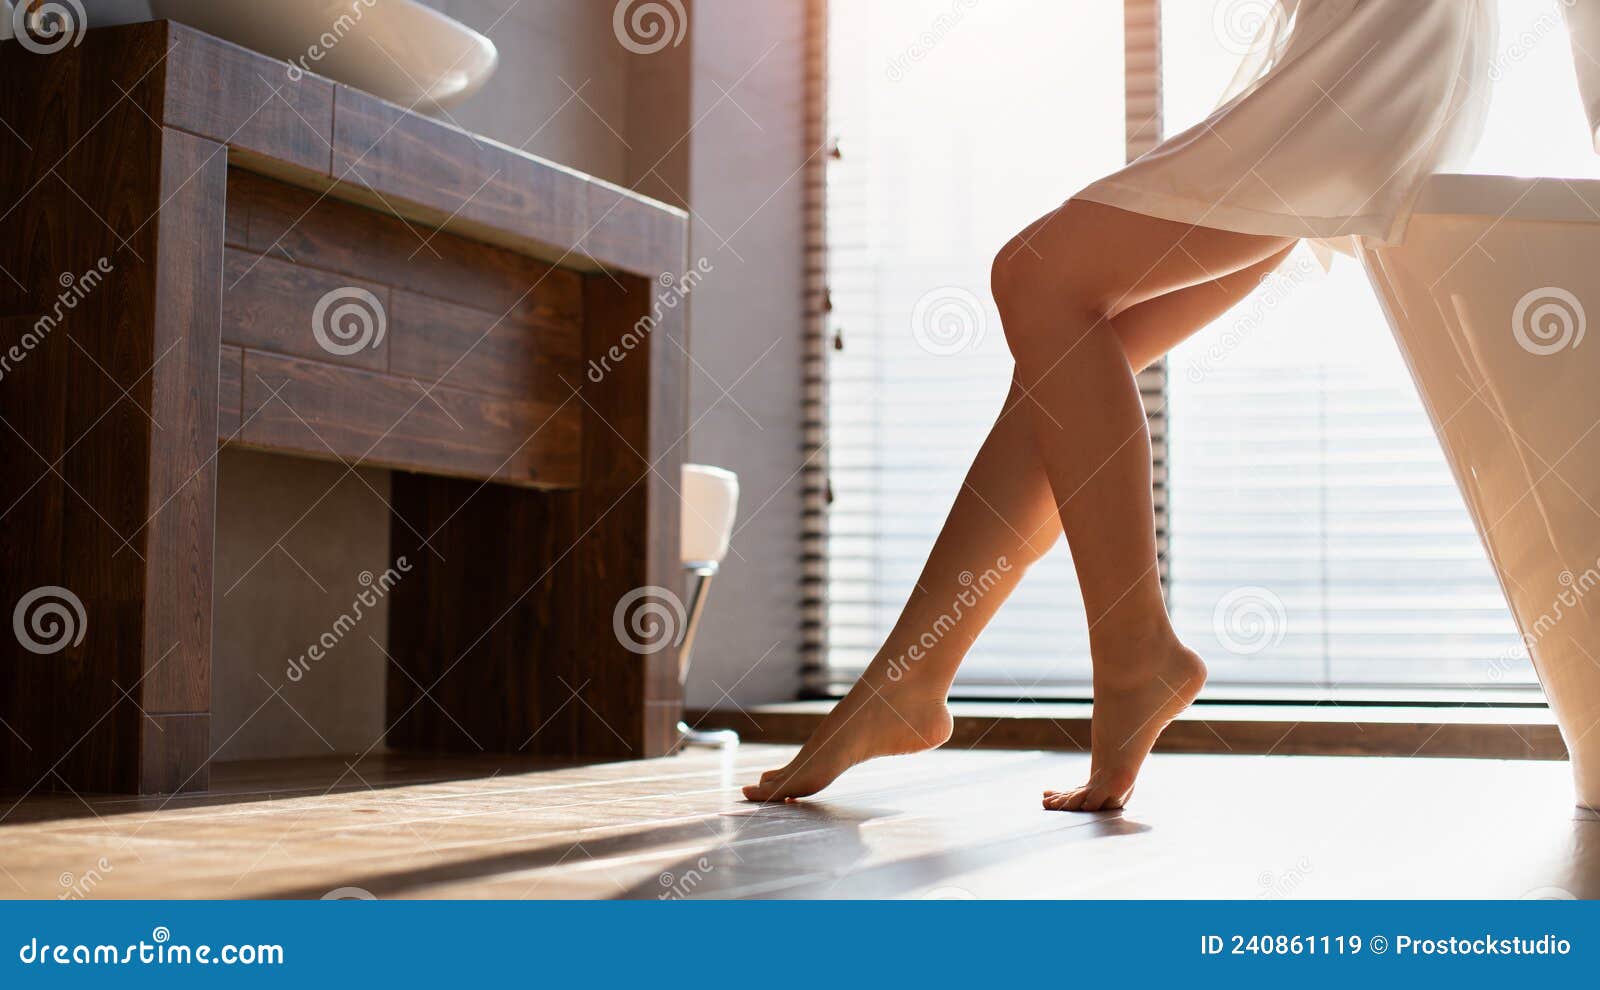 女人趴在沙发上两腿翘着脚丫子图片-1-6TU